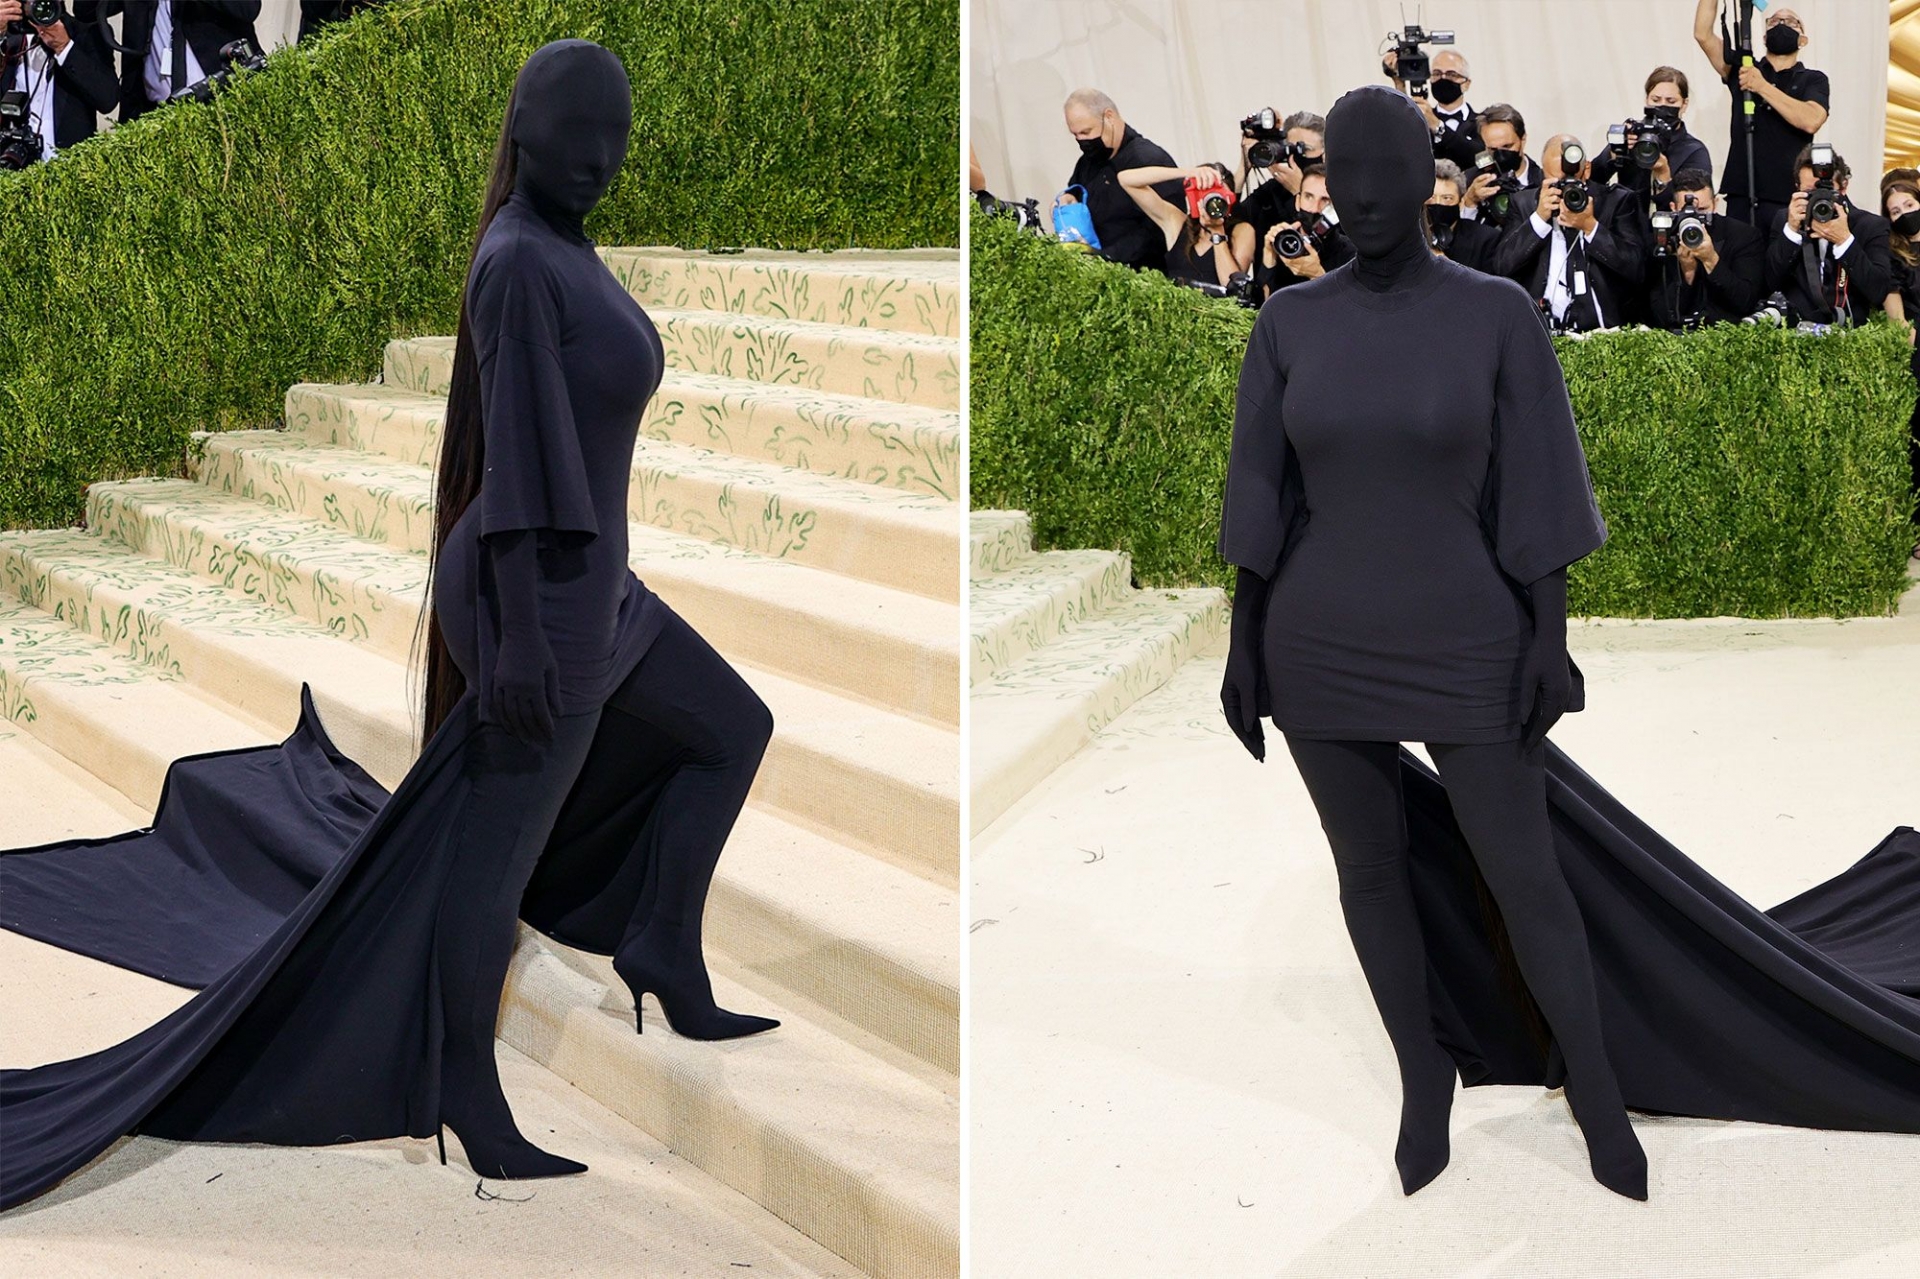 Kim Kardashian từng tiết lộ ý tưởng trang phục này khi mặc nguyên bộ đồ da kín thân trên đường phố New York.